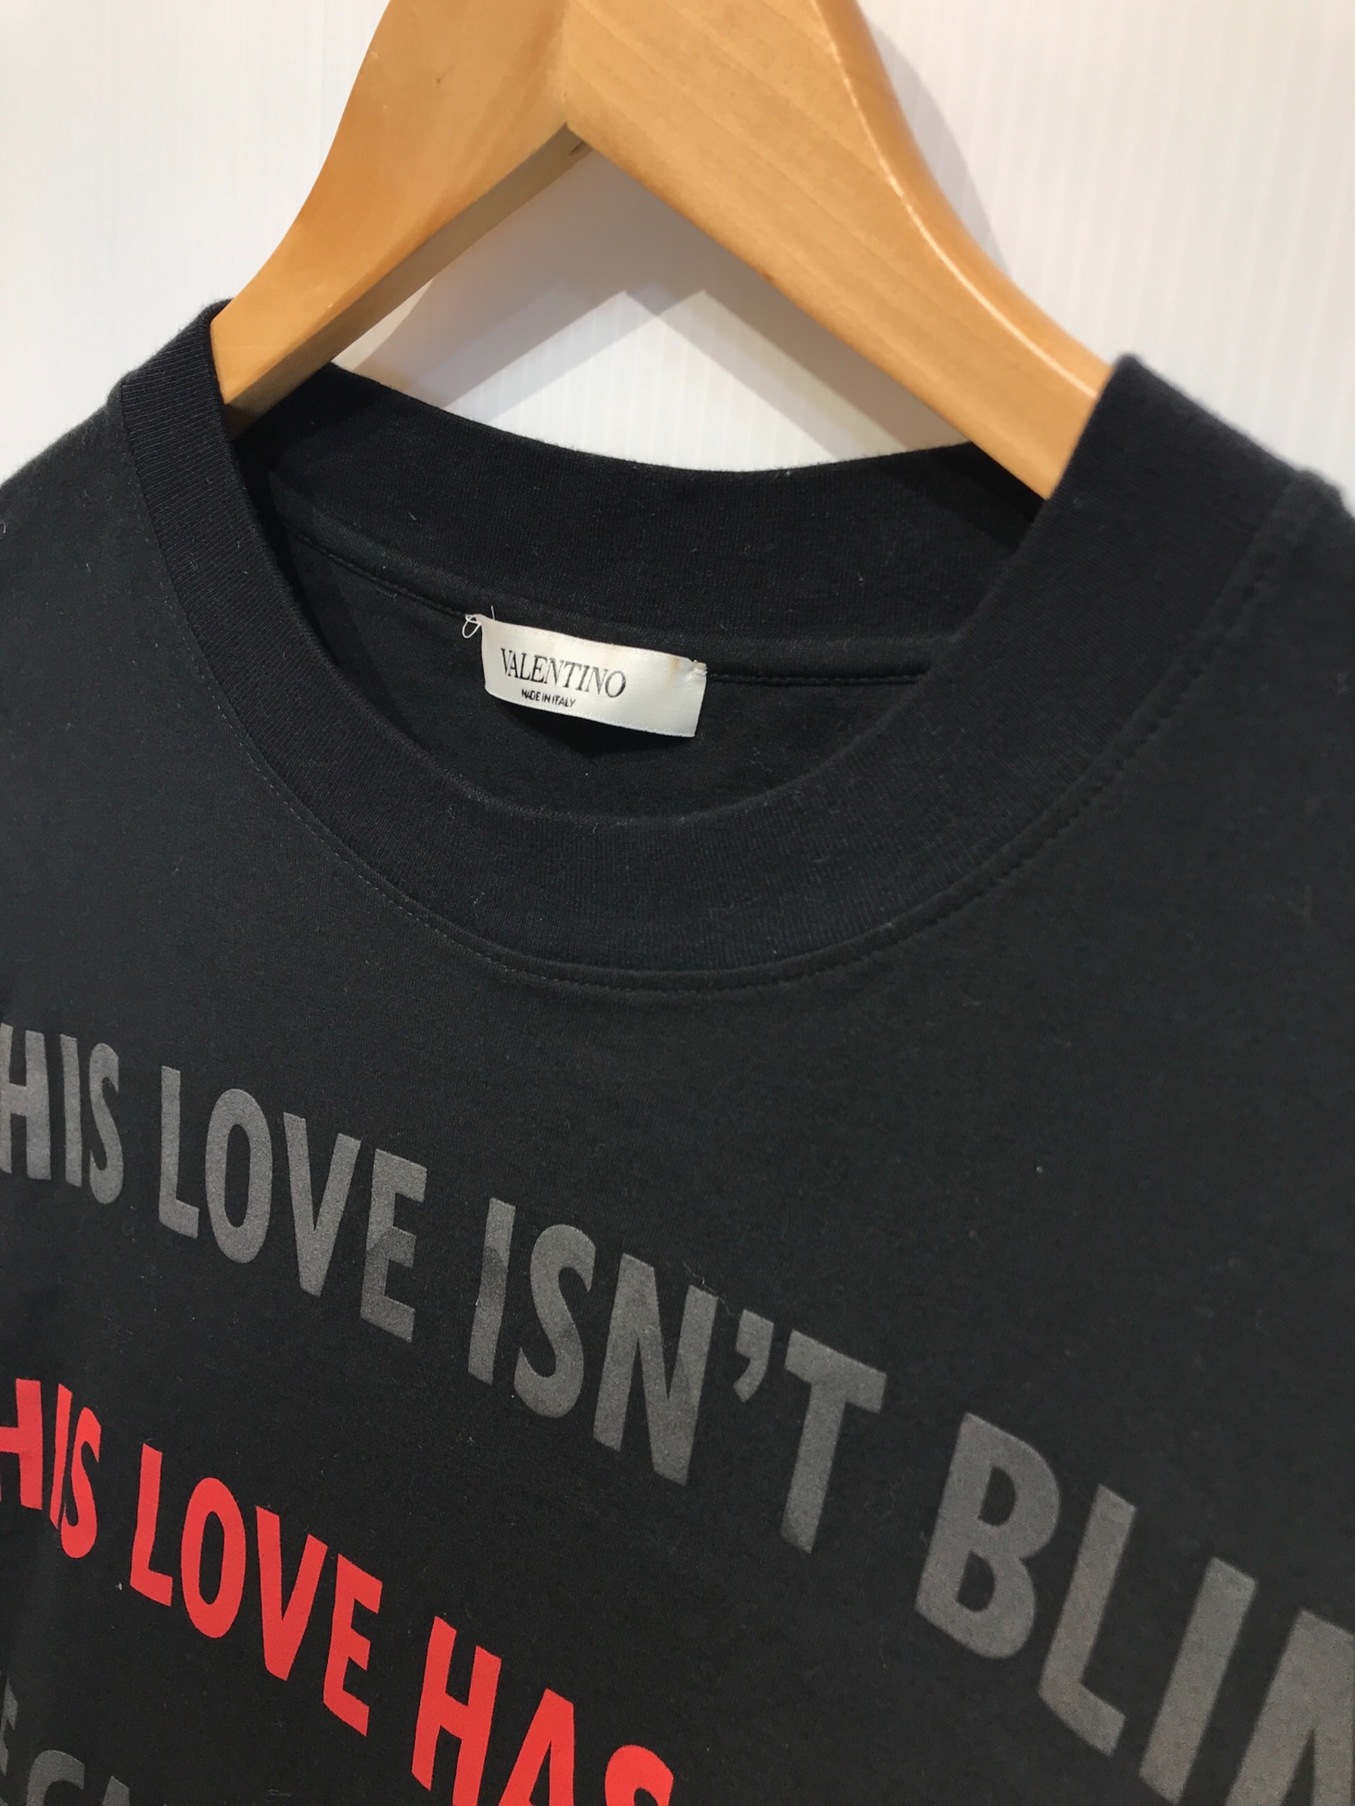 VALENTINO (ヴァレンティノ) This Love Has Eyes T-shirt / プリントTシャツ ブラック サイズ:L